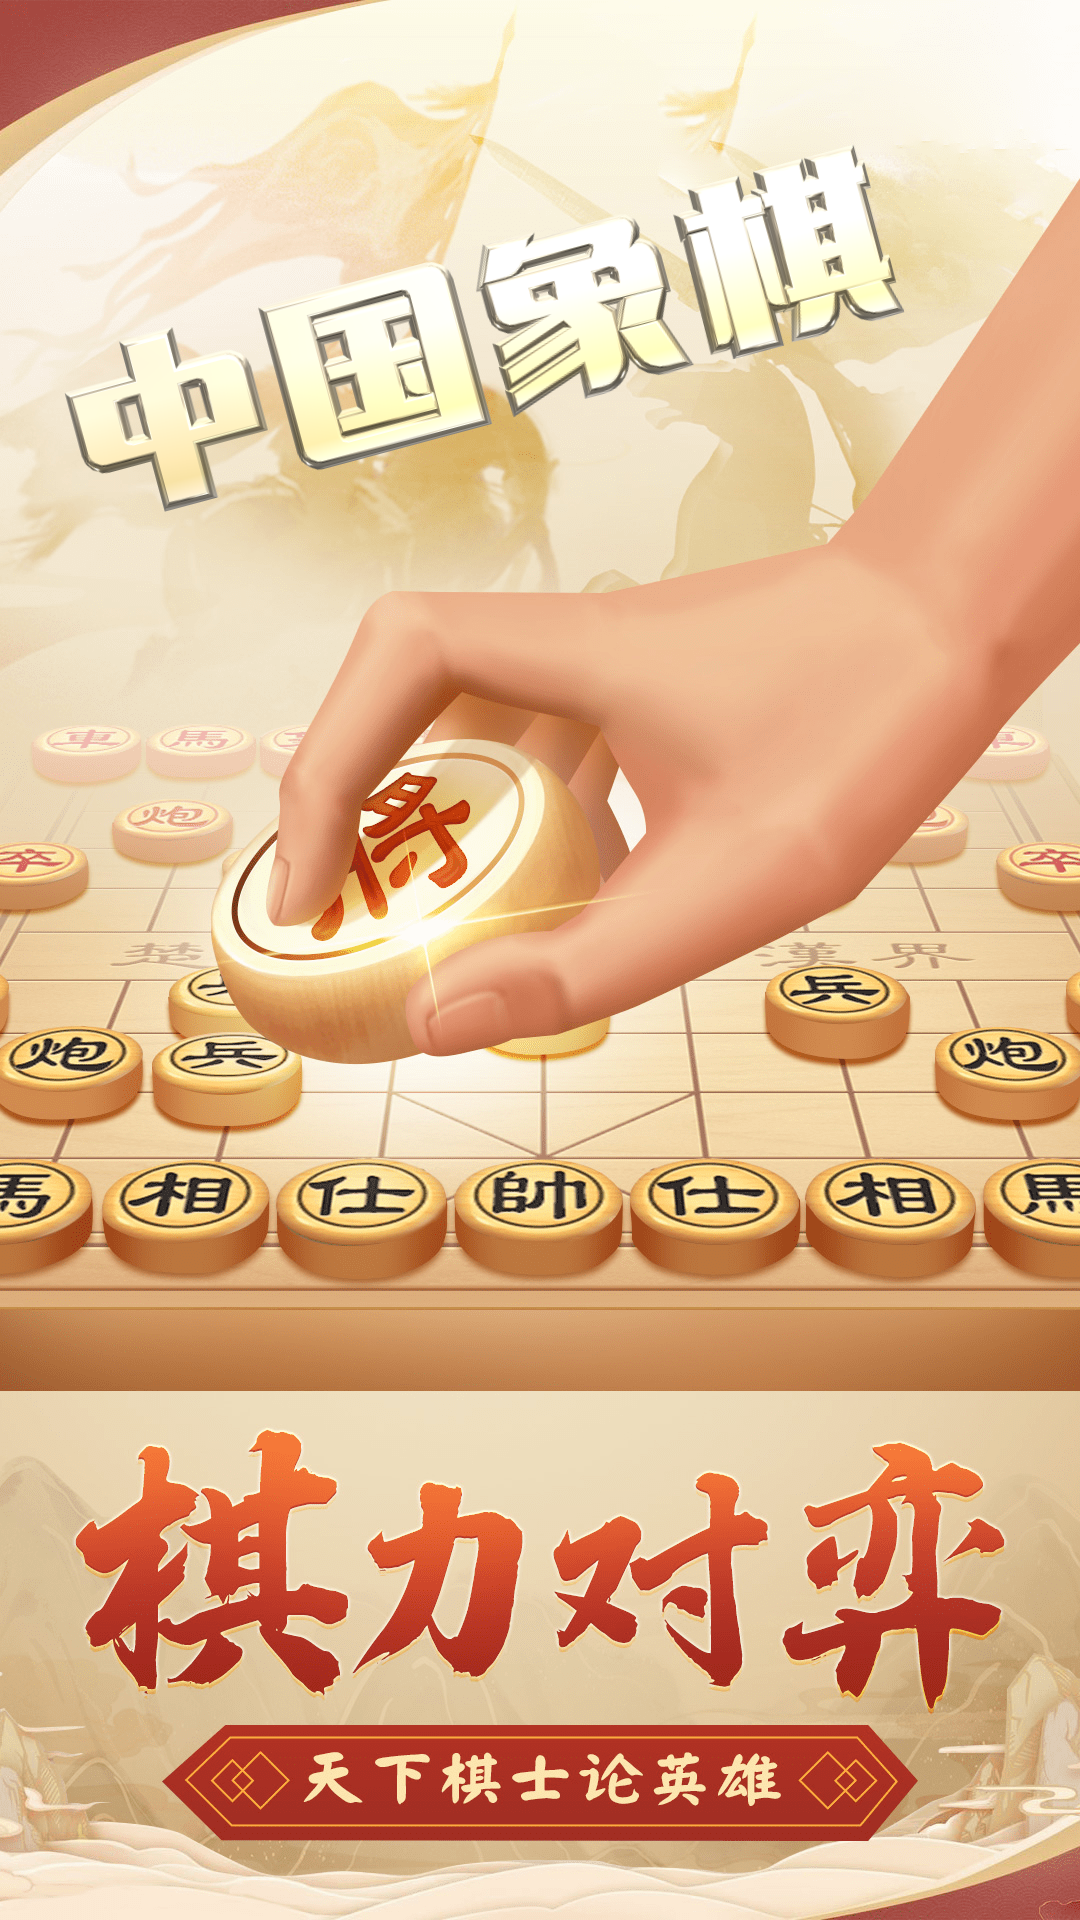 Screenshot 1 of Chinese chess 1.1.0